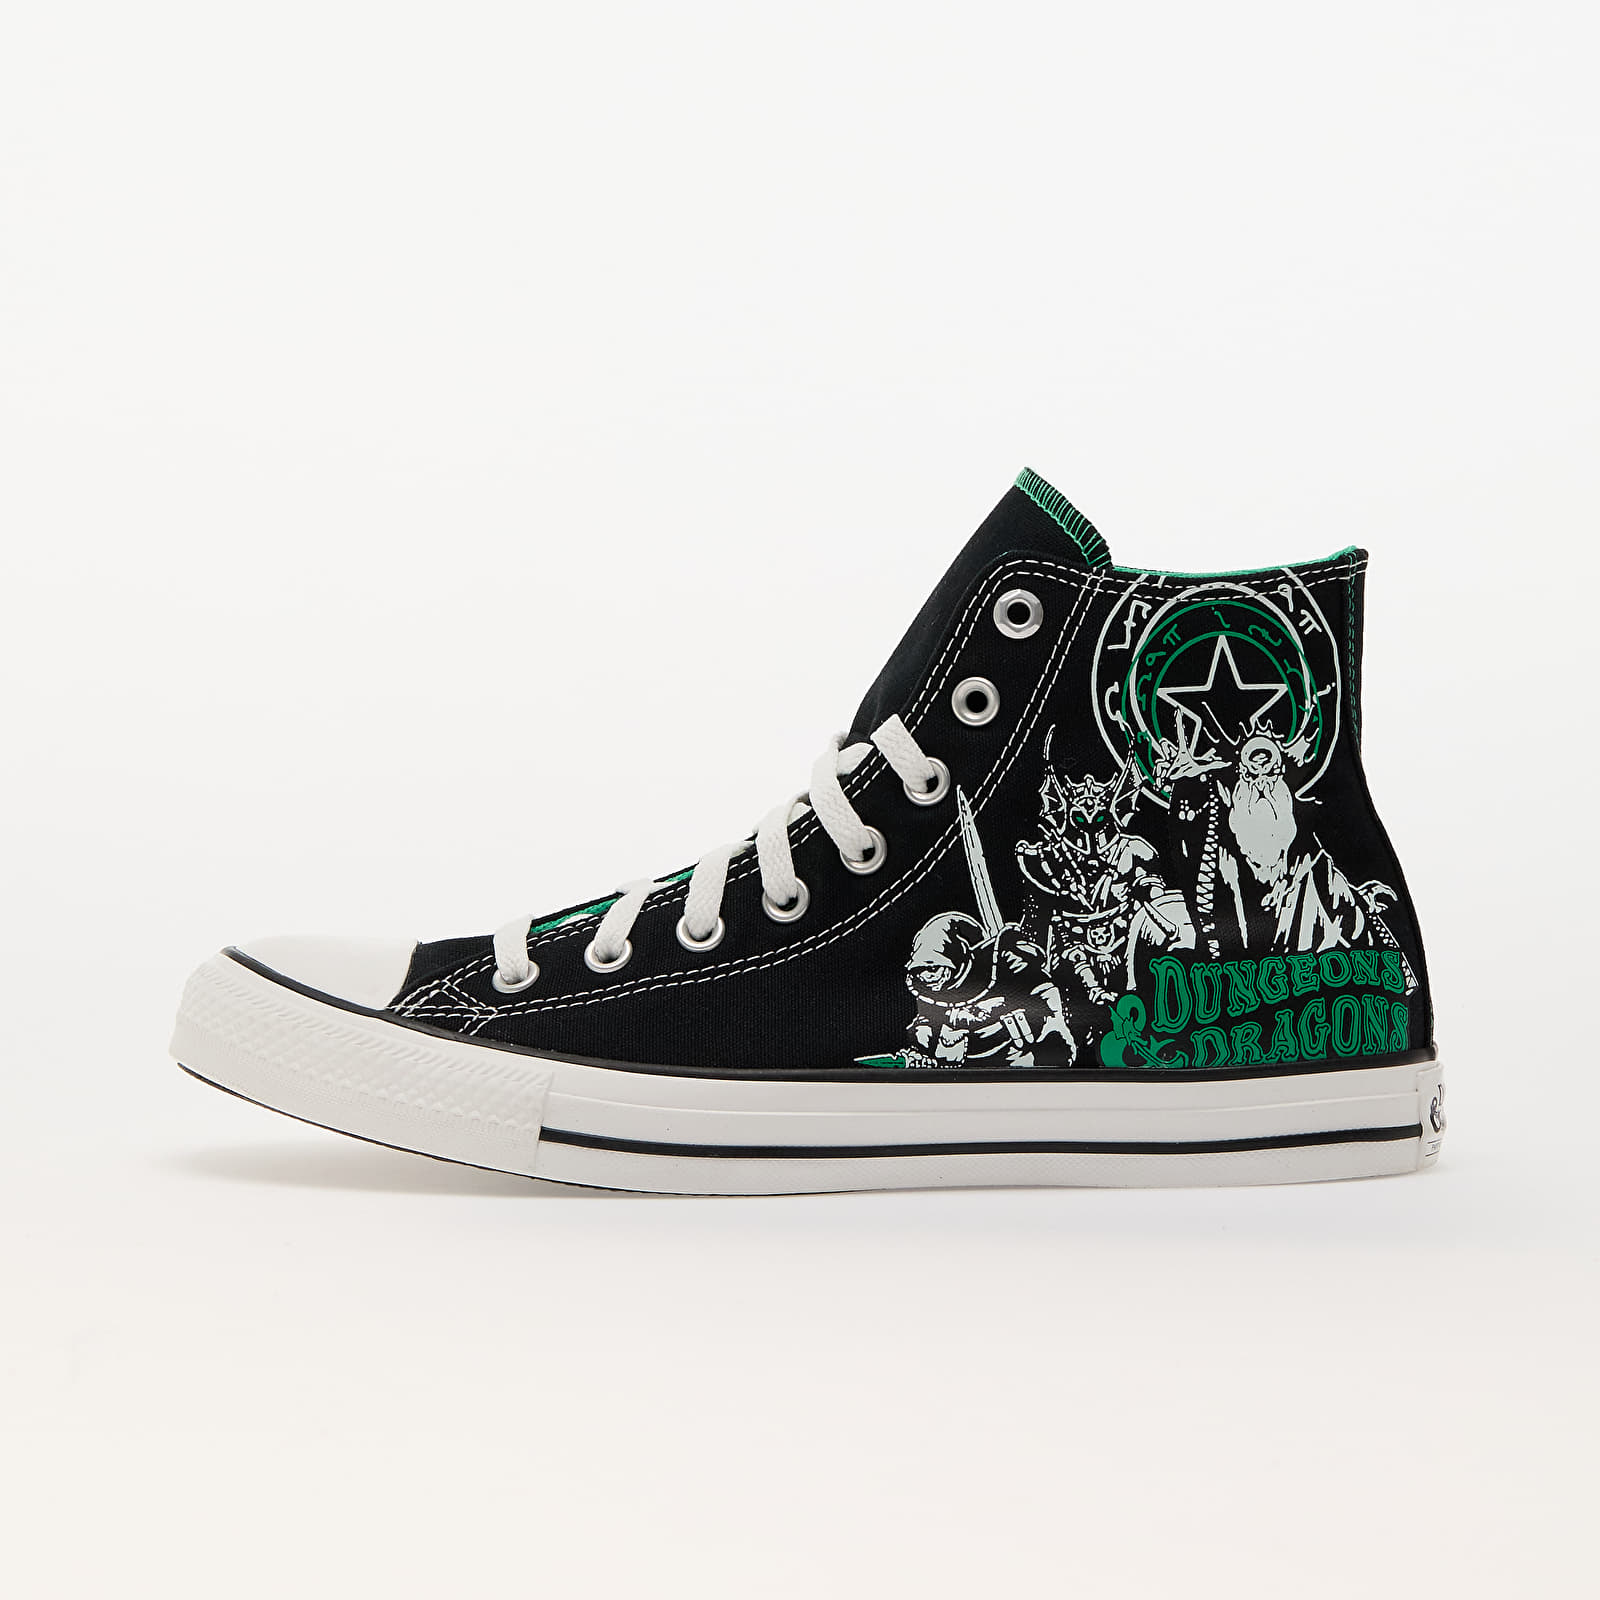 Ανδρικά παπούτσια Converse x Dungeons & Dragons Chuck Taylor All Star Black/ Green/ White